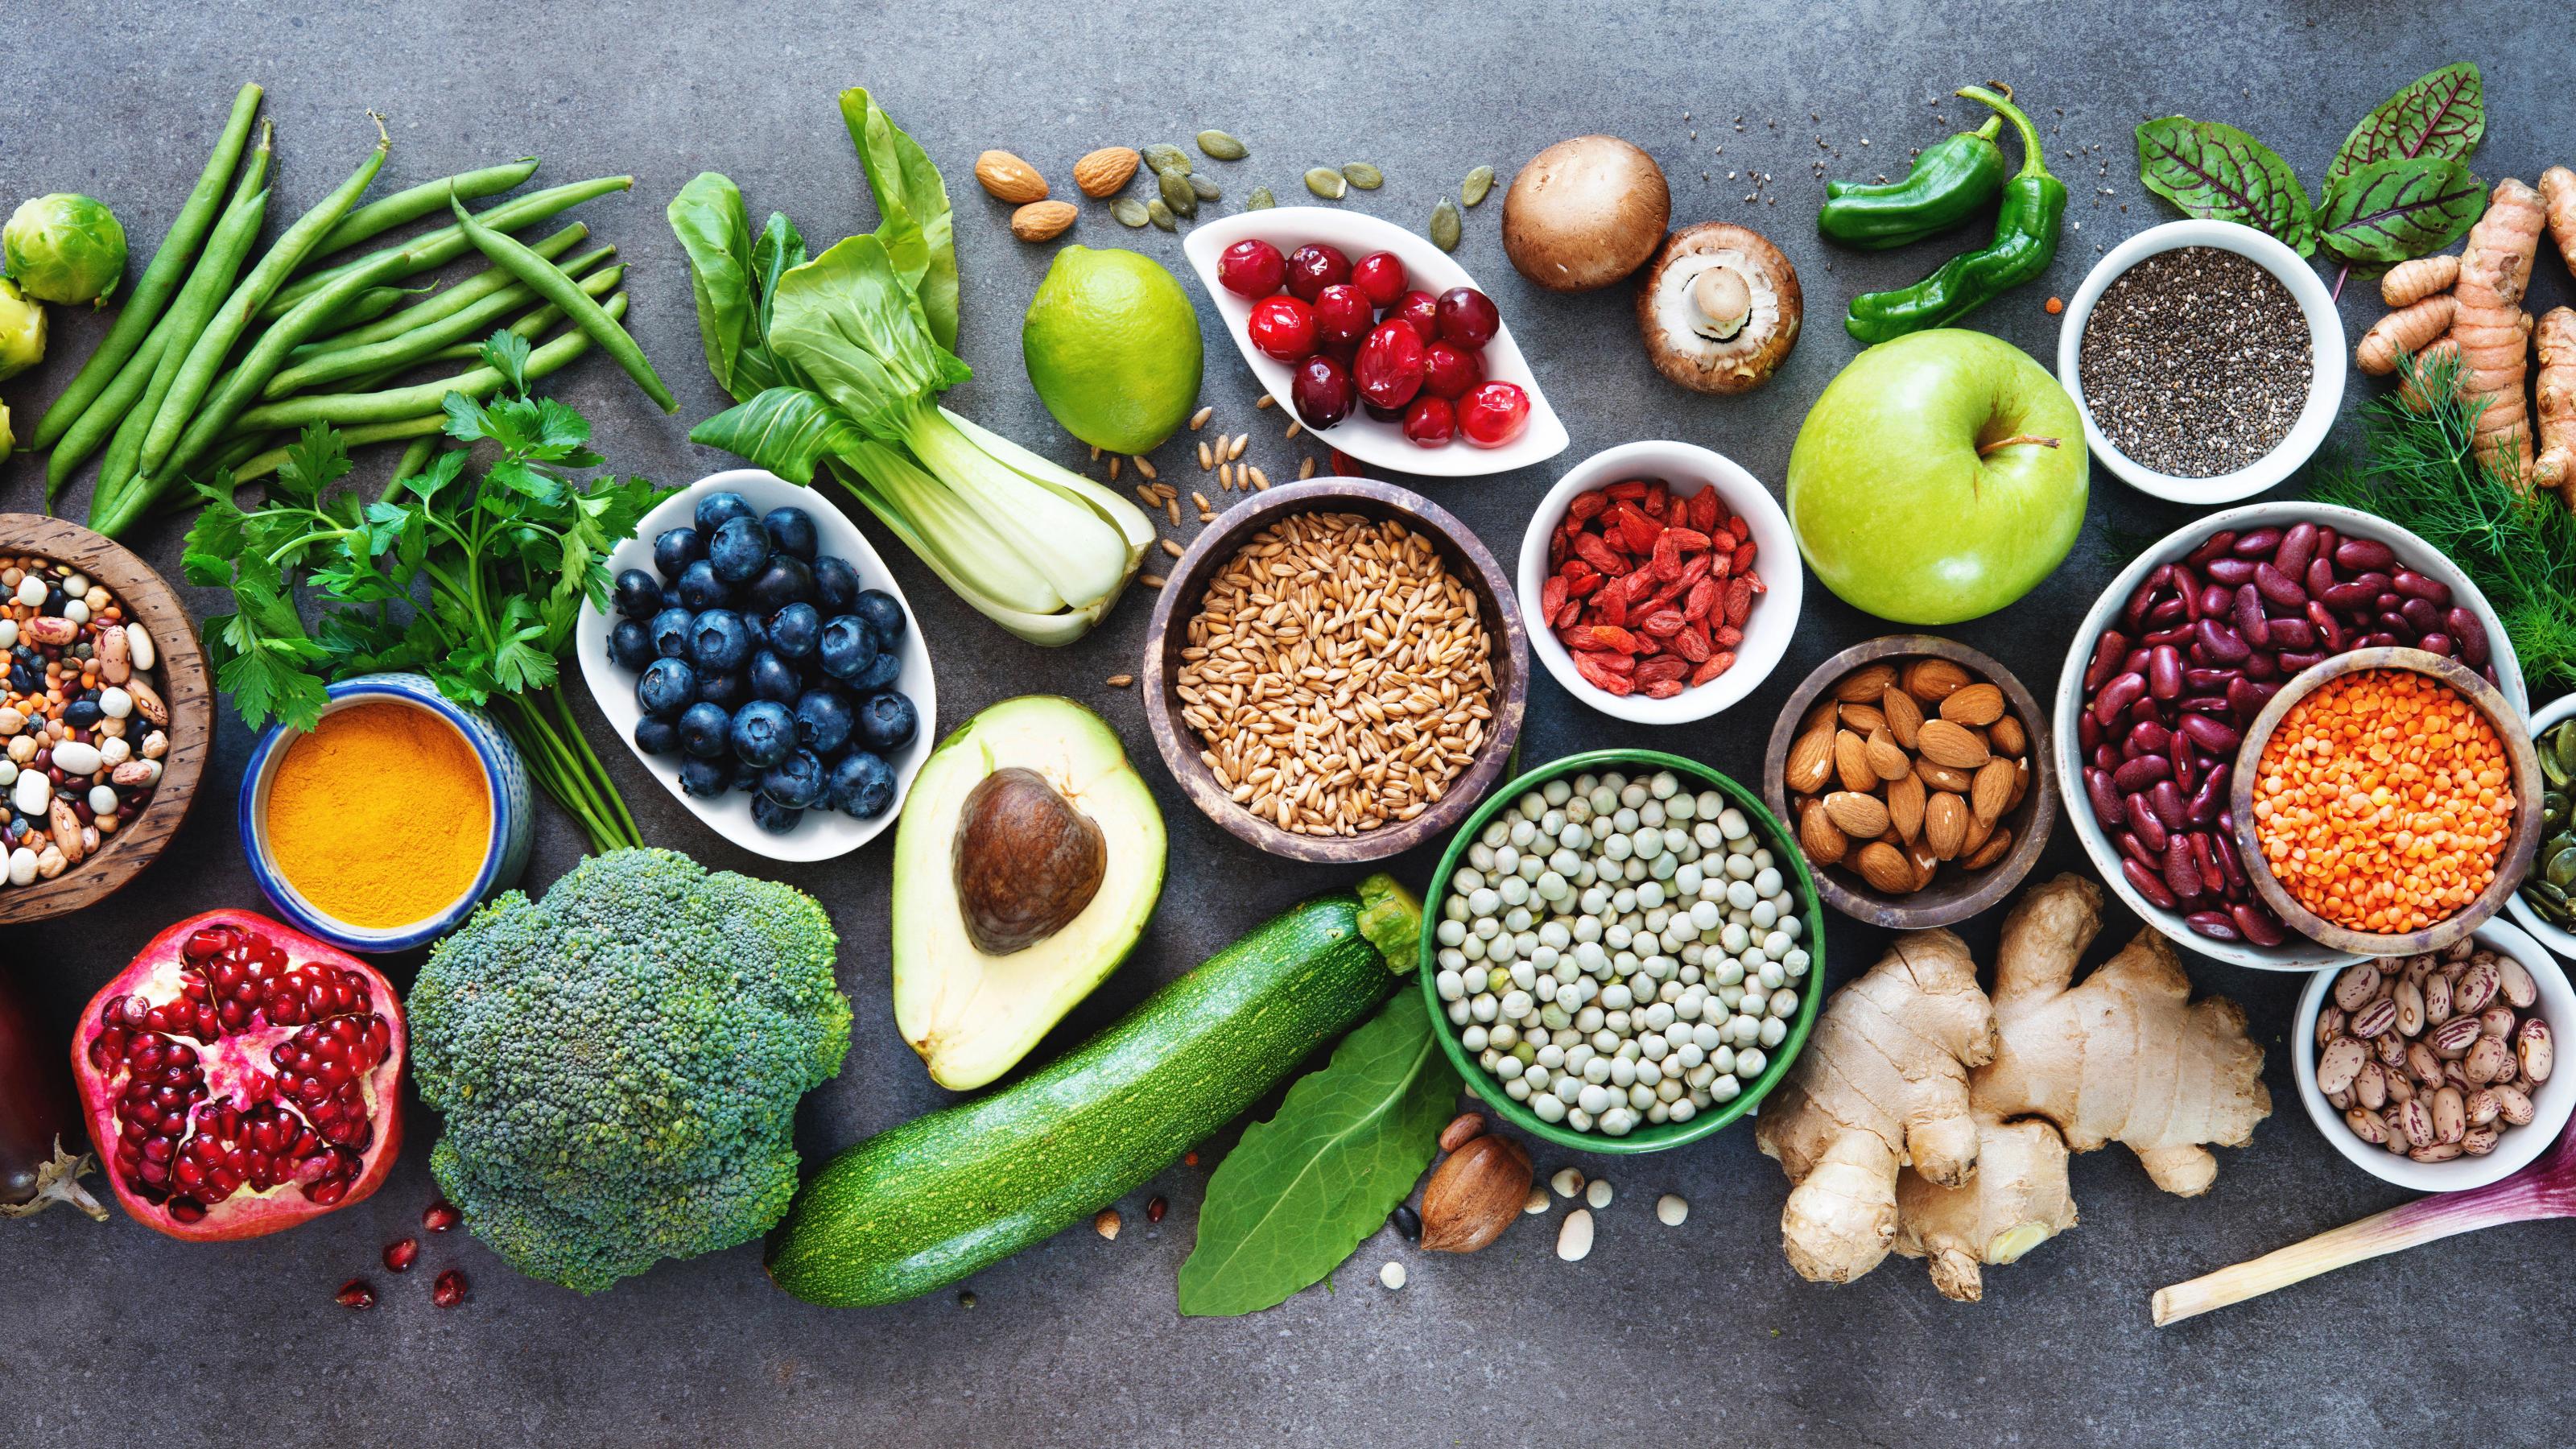 Foto einer breiten Auswahl an gesunden Nahrungsmitteln, darunter Früchte, Gemüse und Saaten.